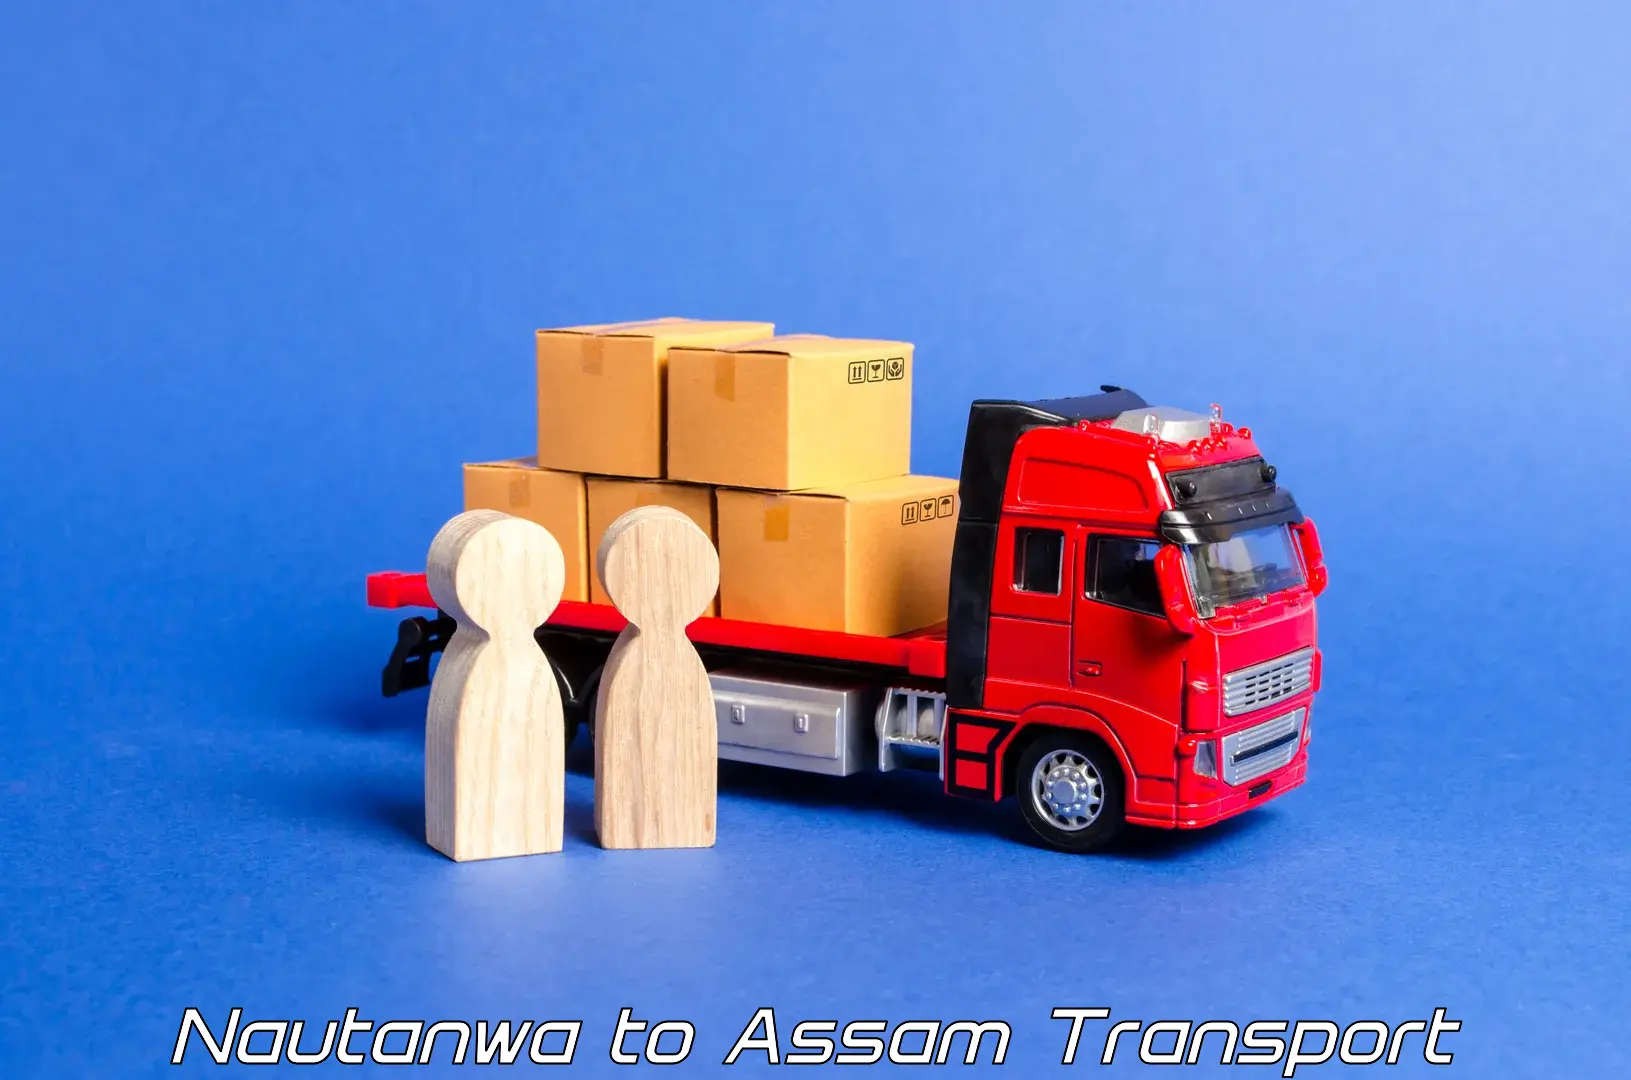 Furniture transport service Nautanwa to Dhupdhara